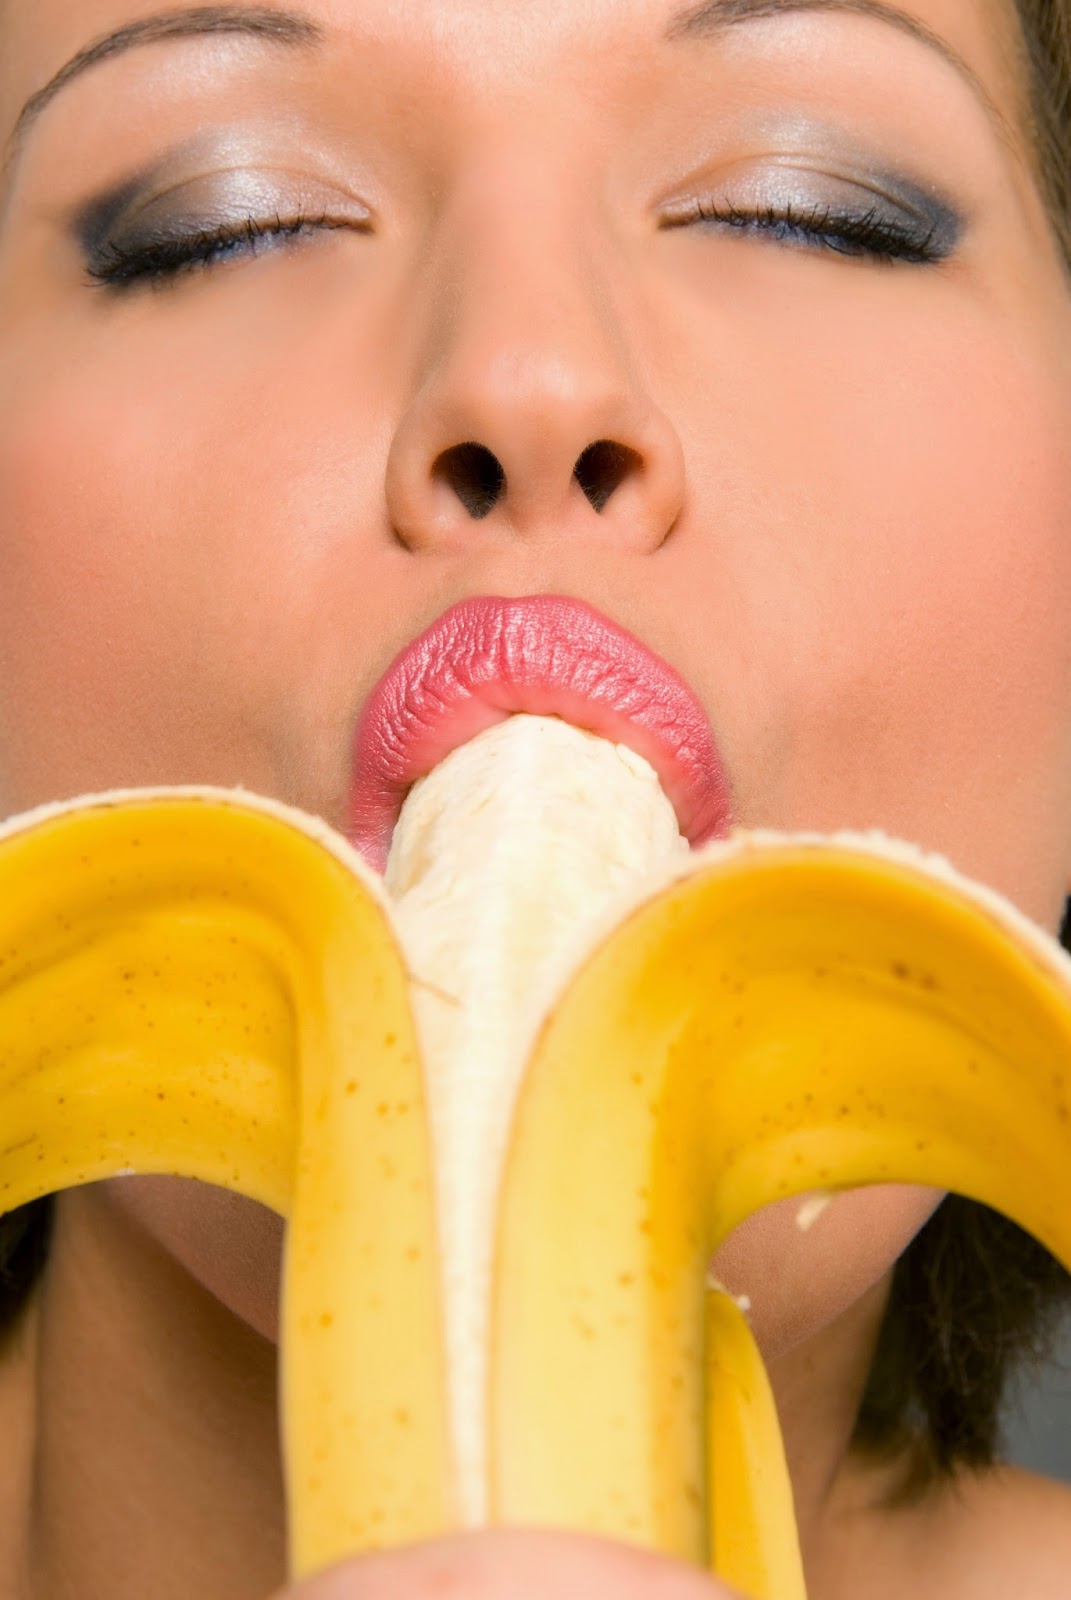 Why do men need to eat banana's.